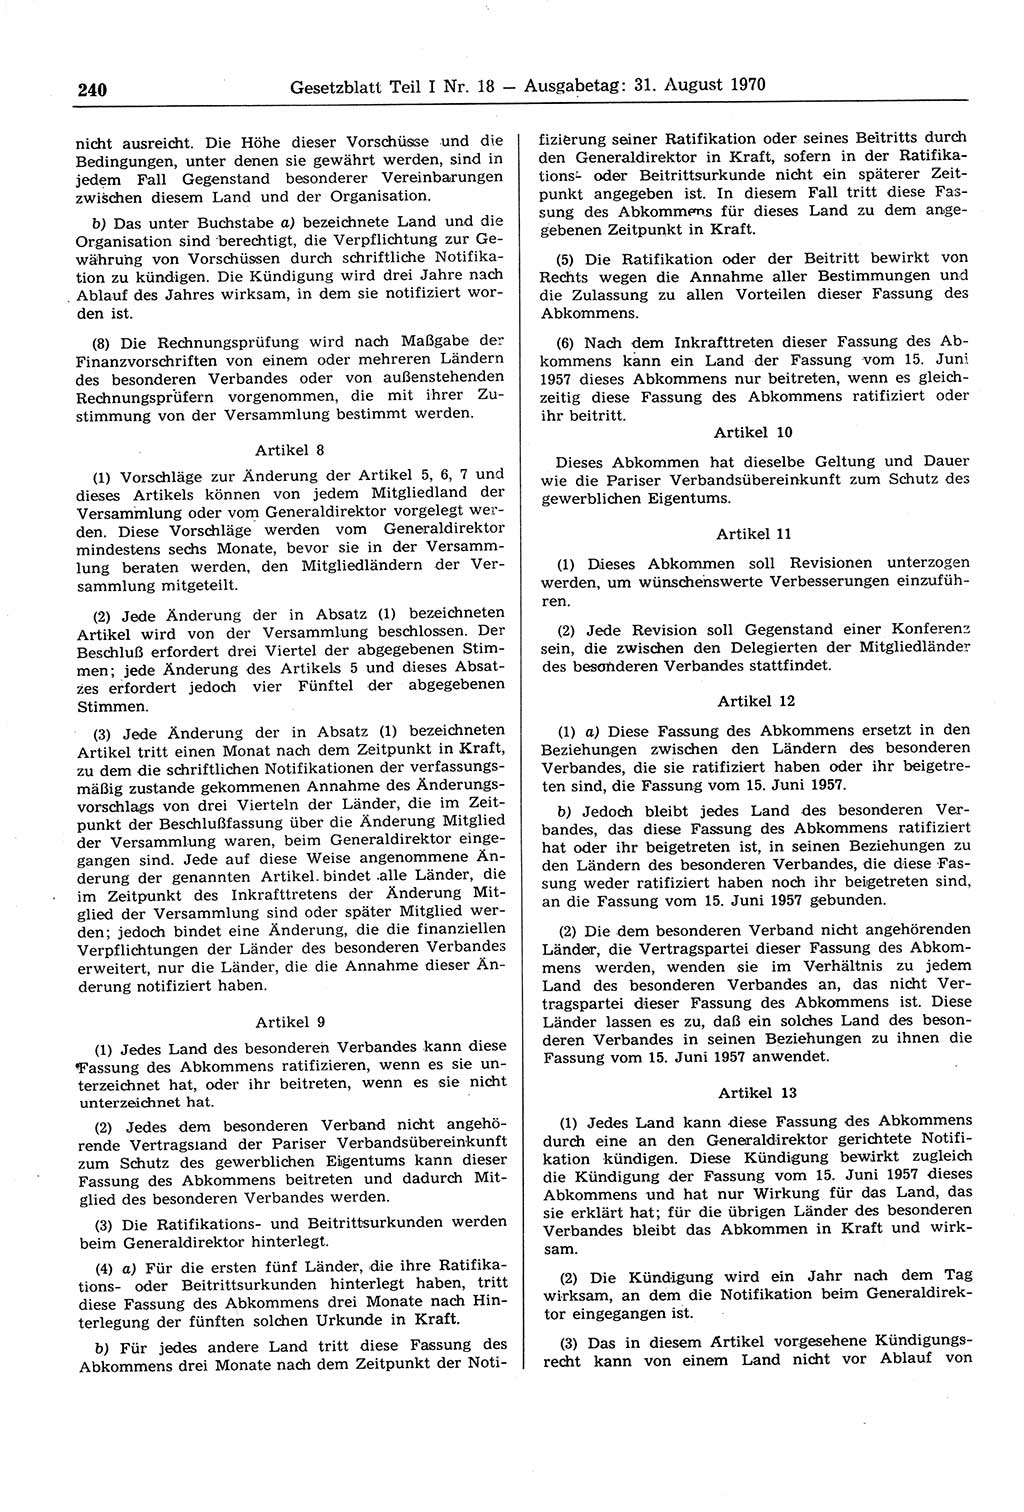 Gesetzblatt (GBl.) der Deutschen Demokratischen Republik (DDR) Teil Ⅰ 1970, Seite 240 (GBl. DDR Ⅰ 1970, S. 240)